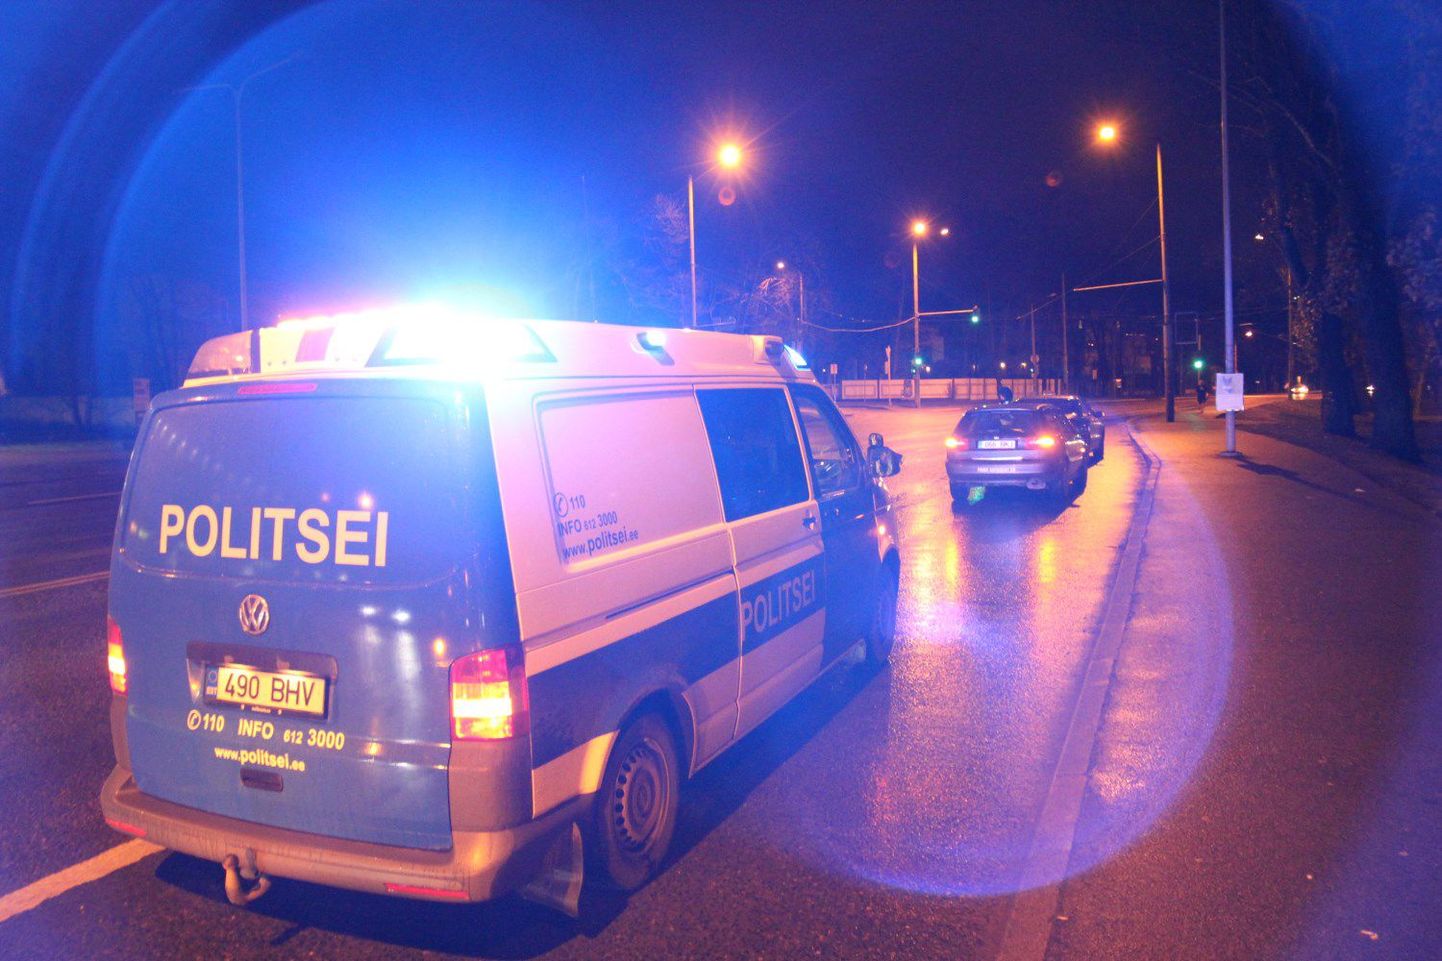 Tallinnas juhtunud liiklusõnnetuses sai raskelt viga teed ületanud jalakäija. Foto on illustreeriv.